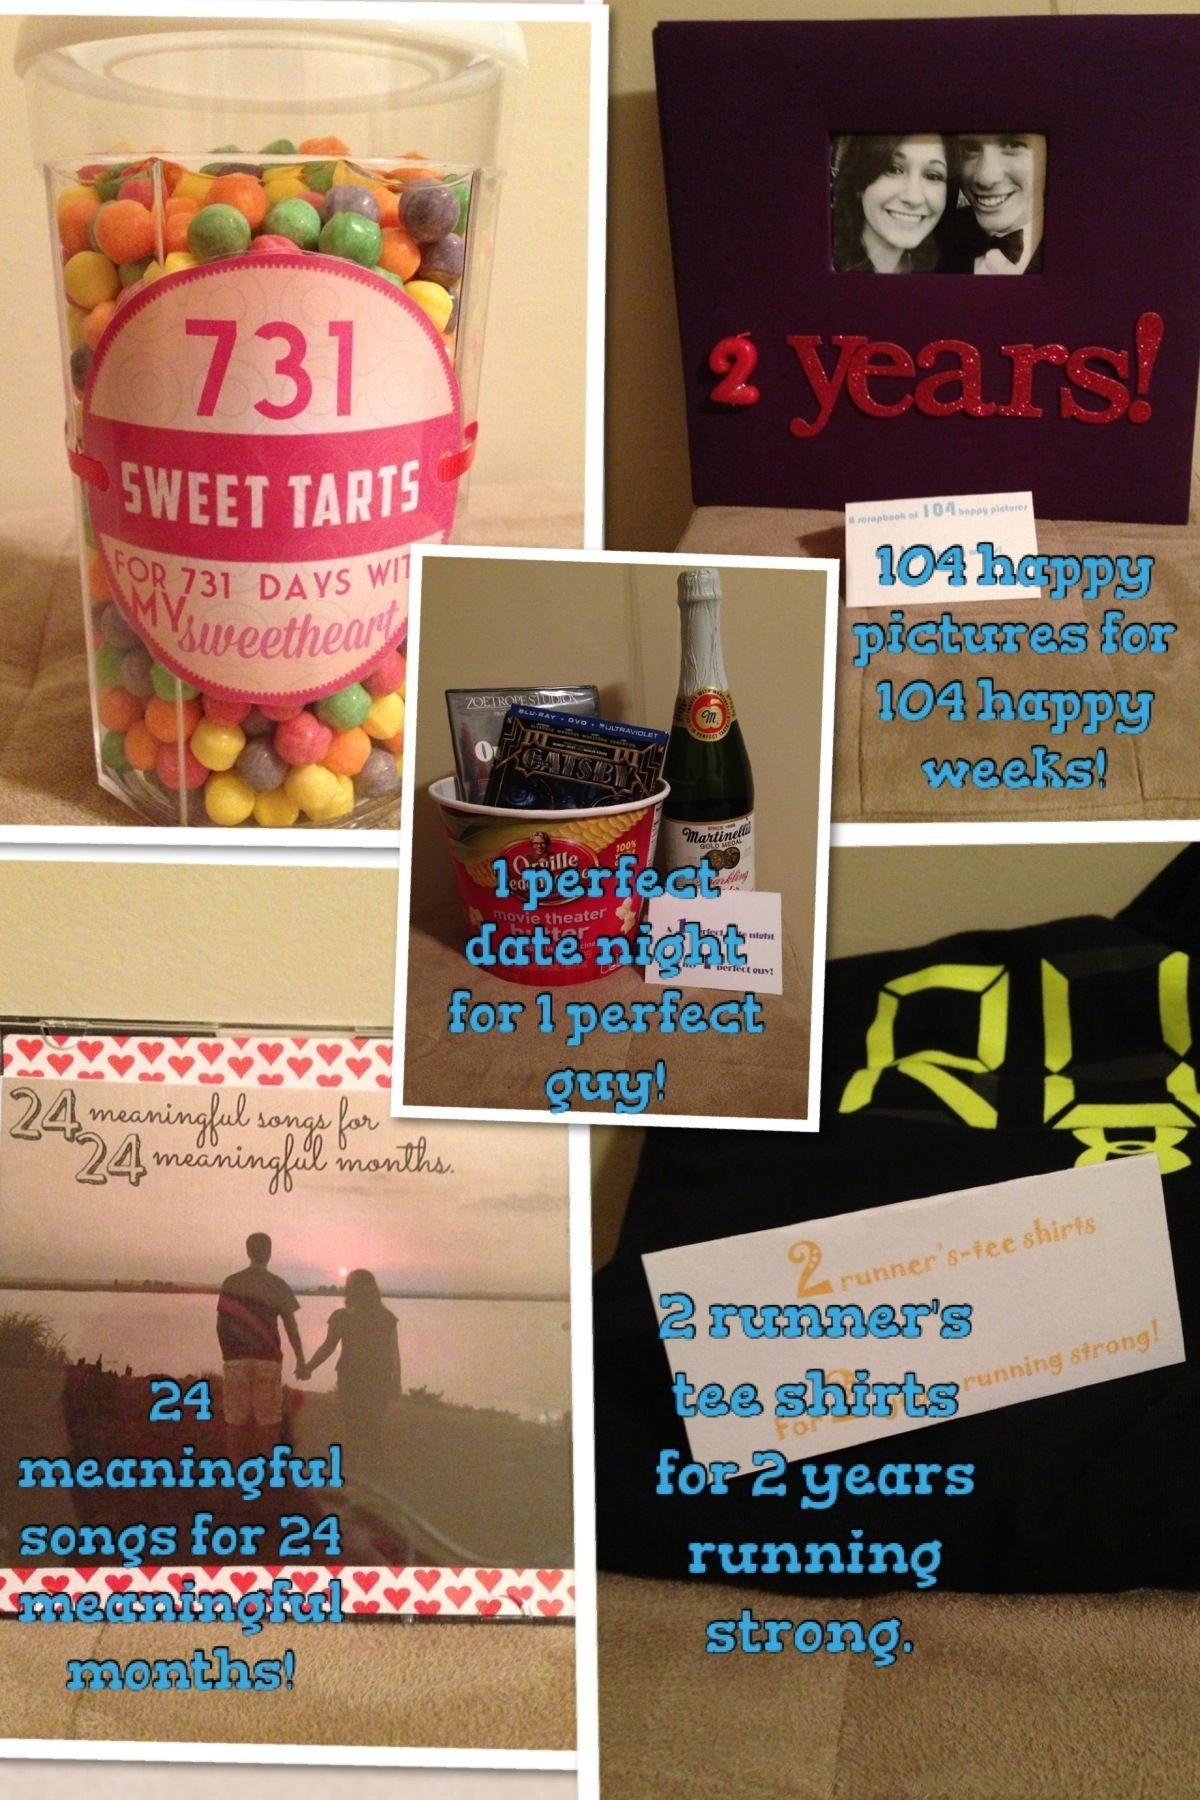 10 Cute Cute 2 Year Anniversary Ideas 2 year anniversary for my boyfriend gift ideas so cute 1 2022